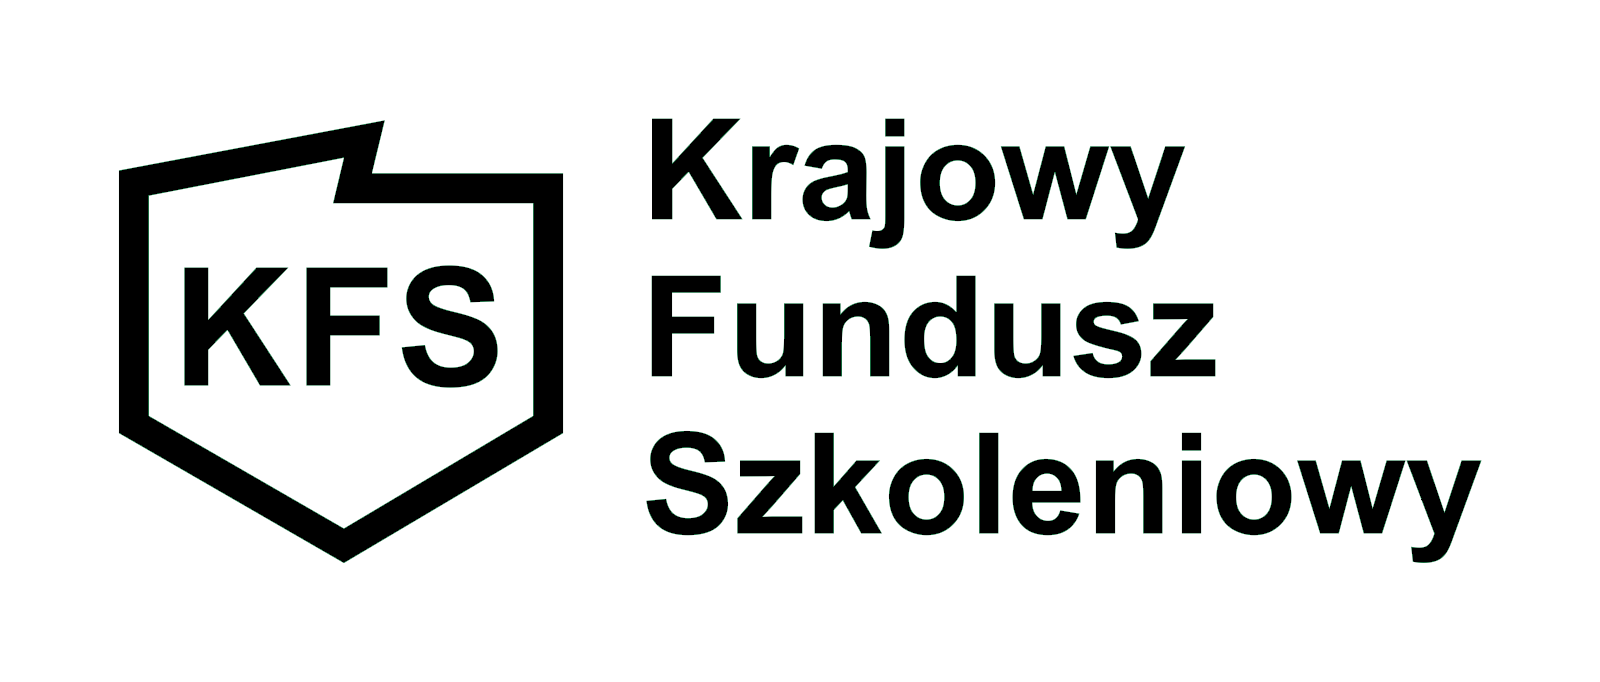 Krajowy Fundusz Szkoleniowy - logo czarno-białe